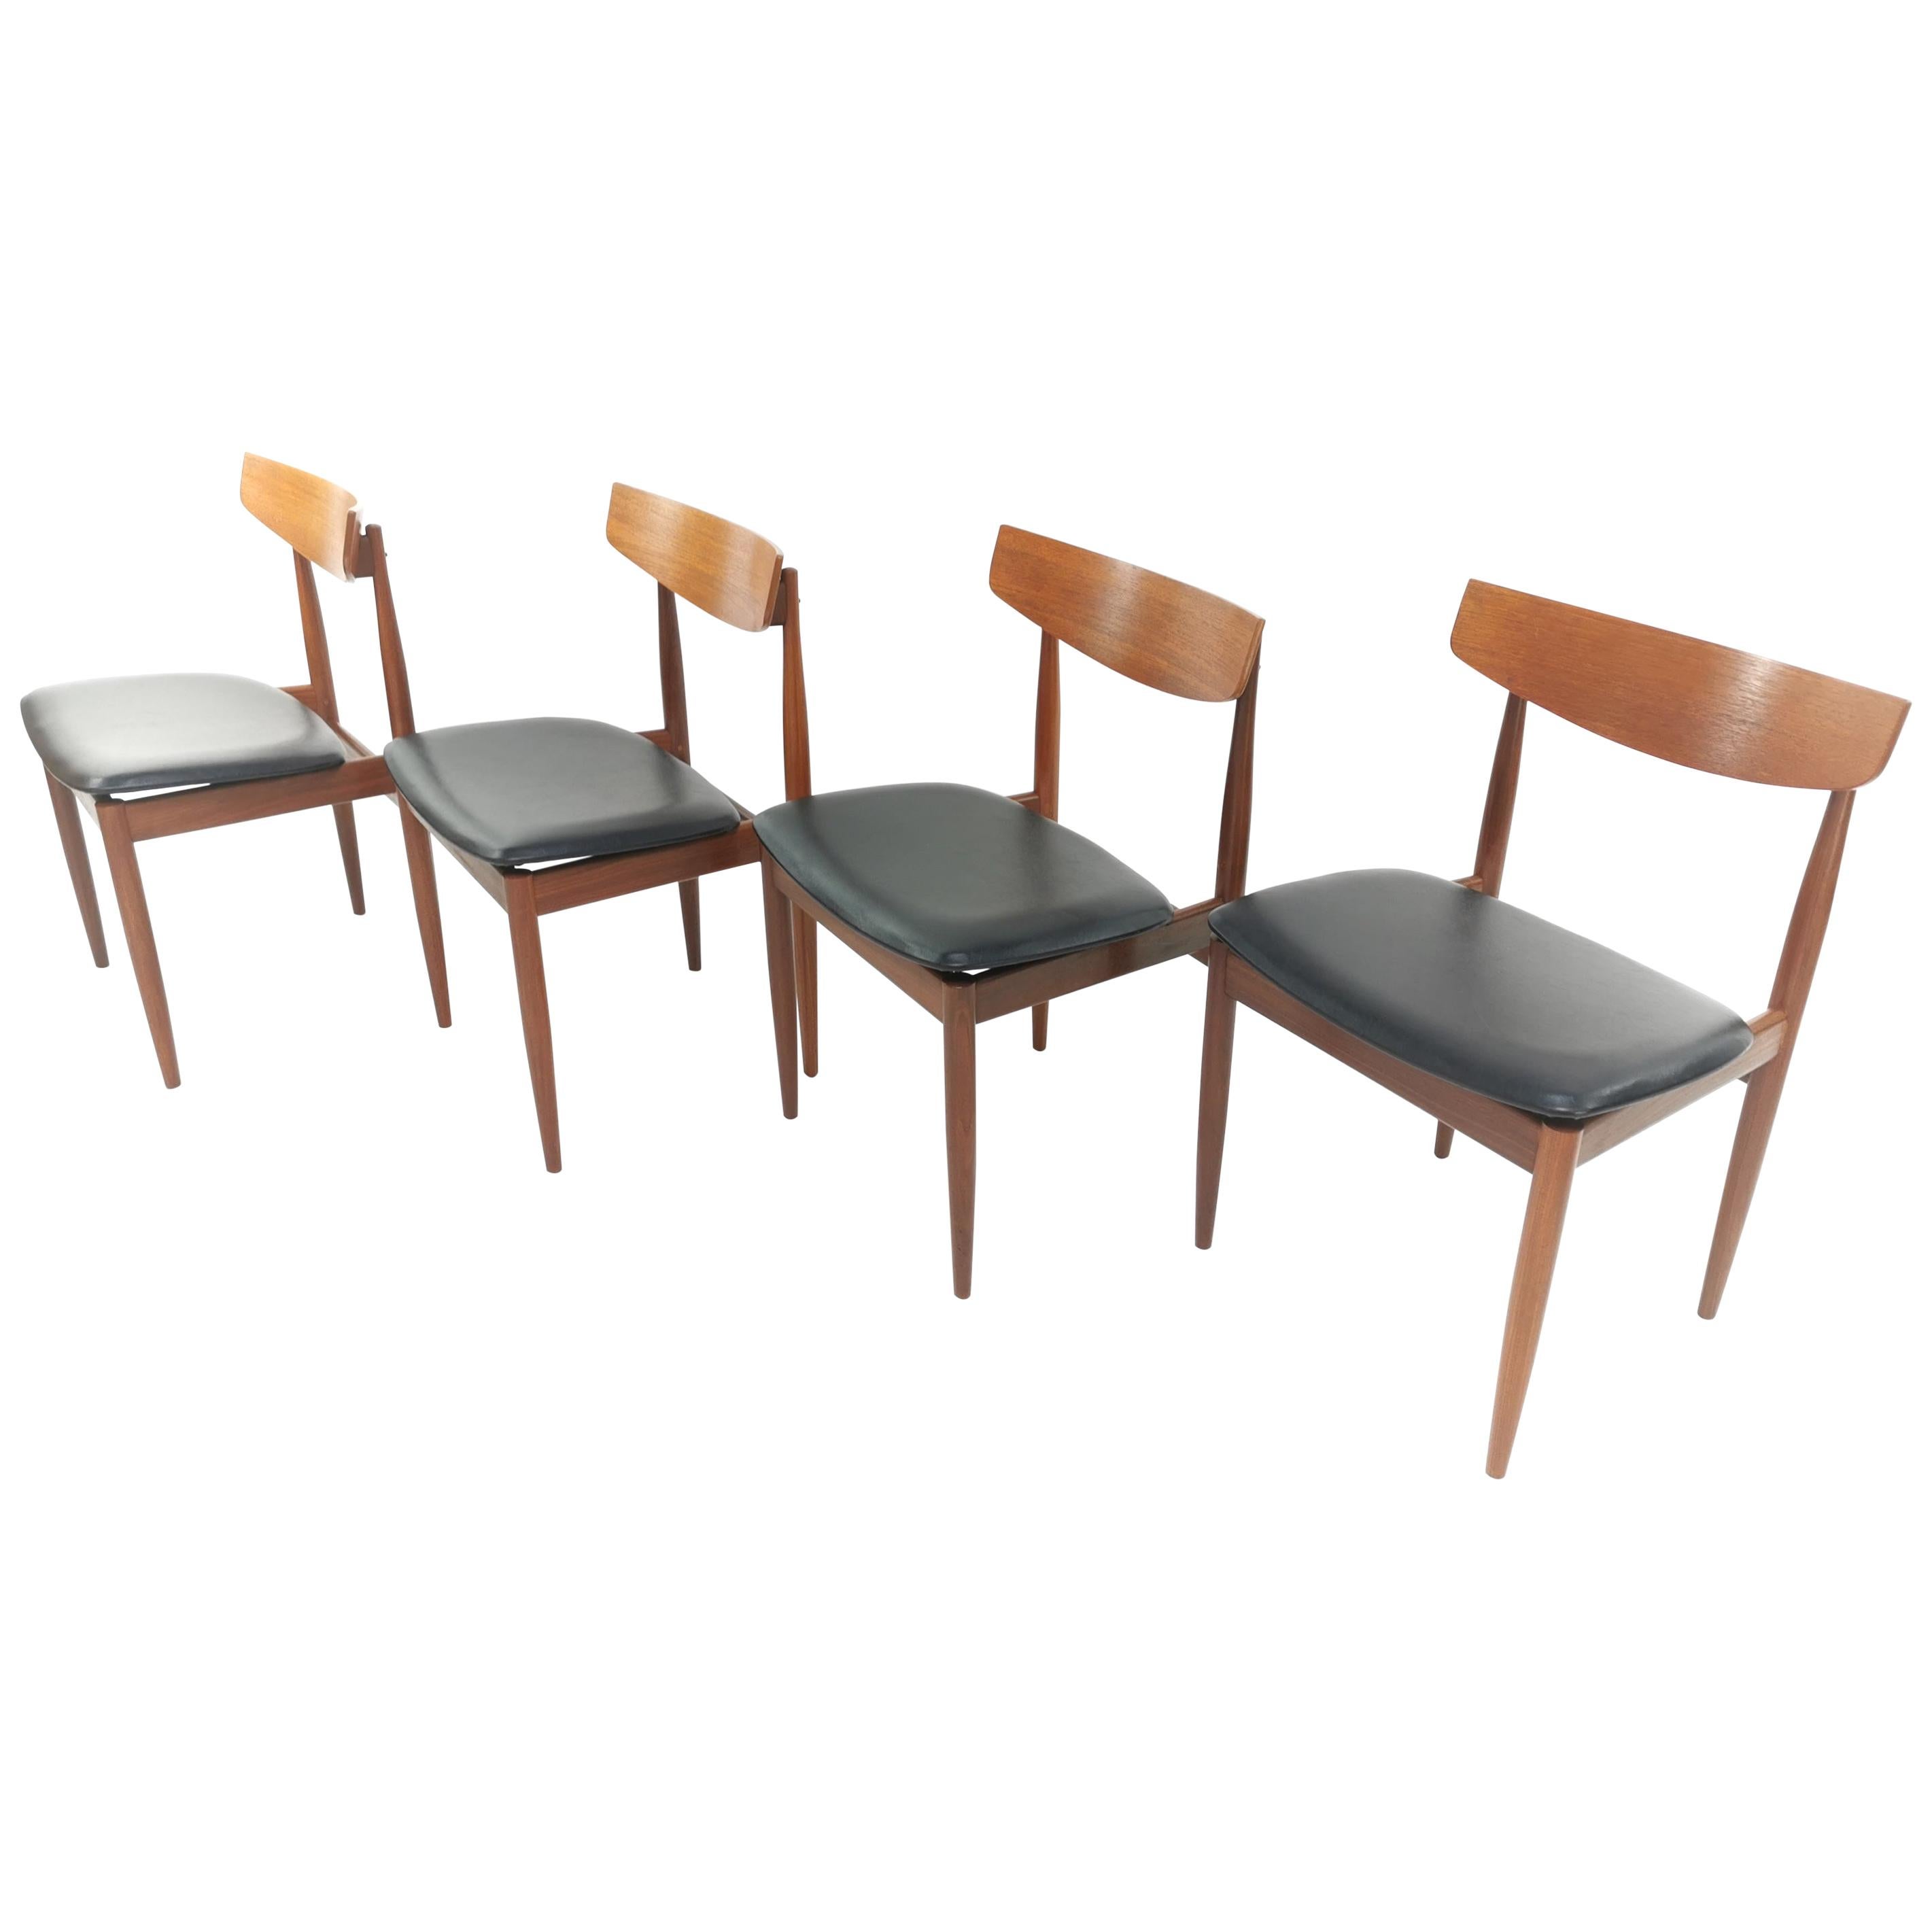 4 Kofod Larsen Teak G Plan Danish Dining Chairs 1960s Vintage Midcentury Se